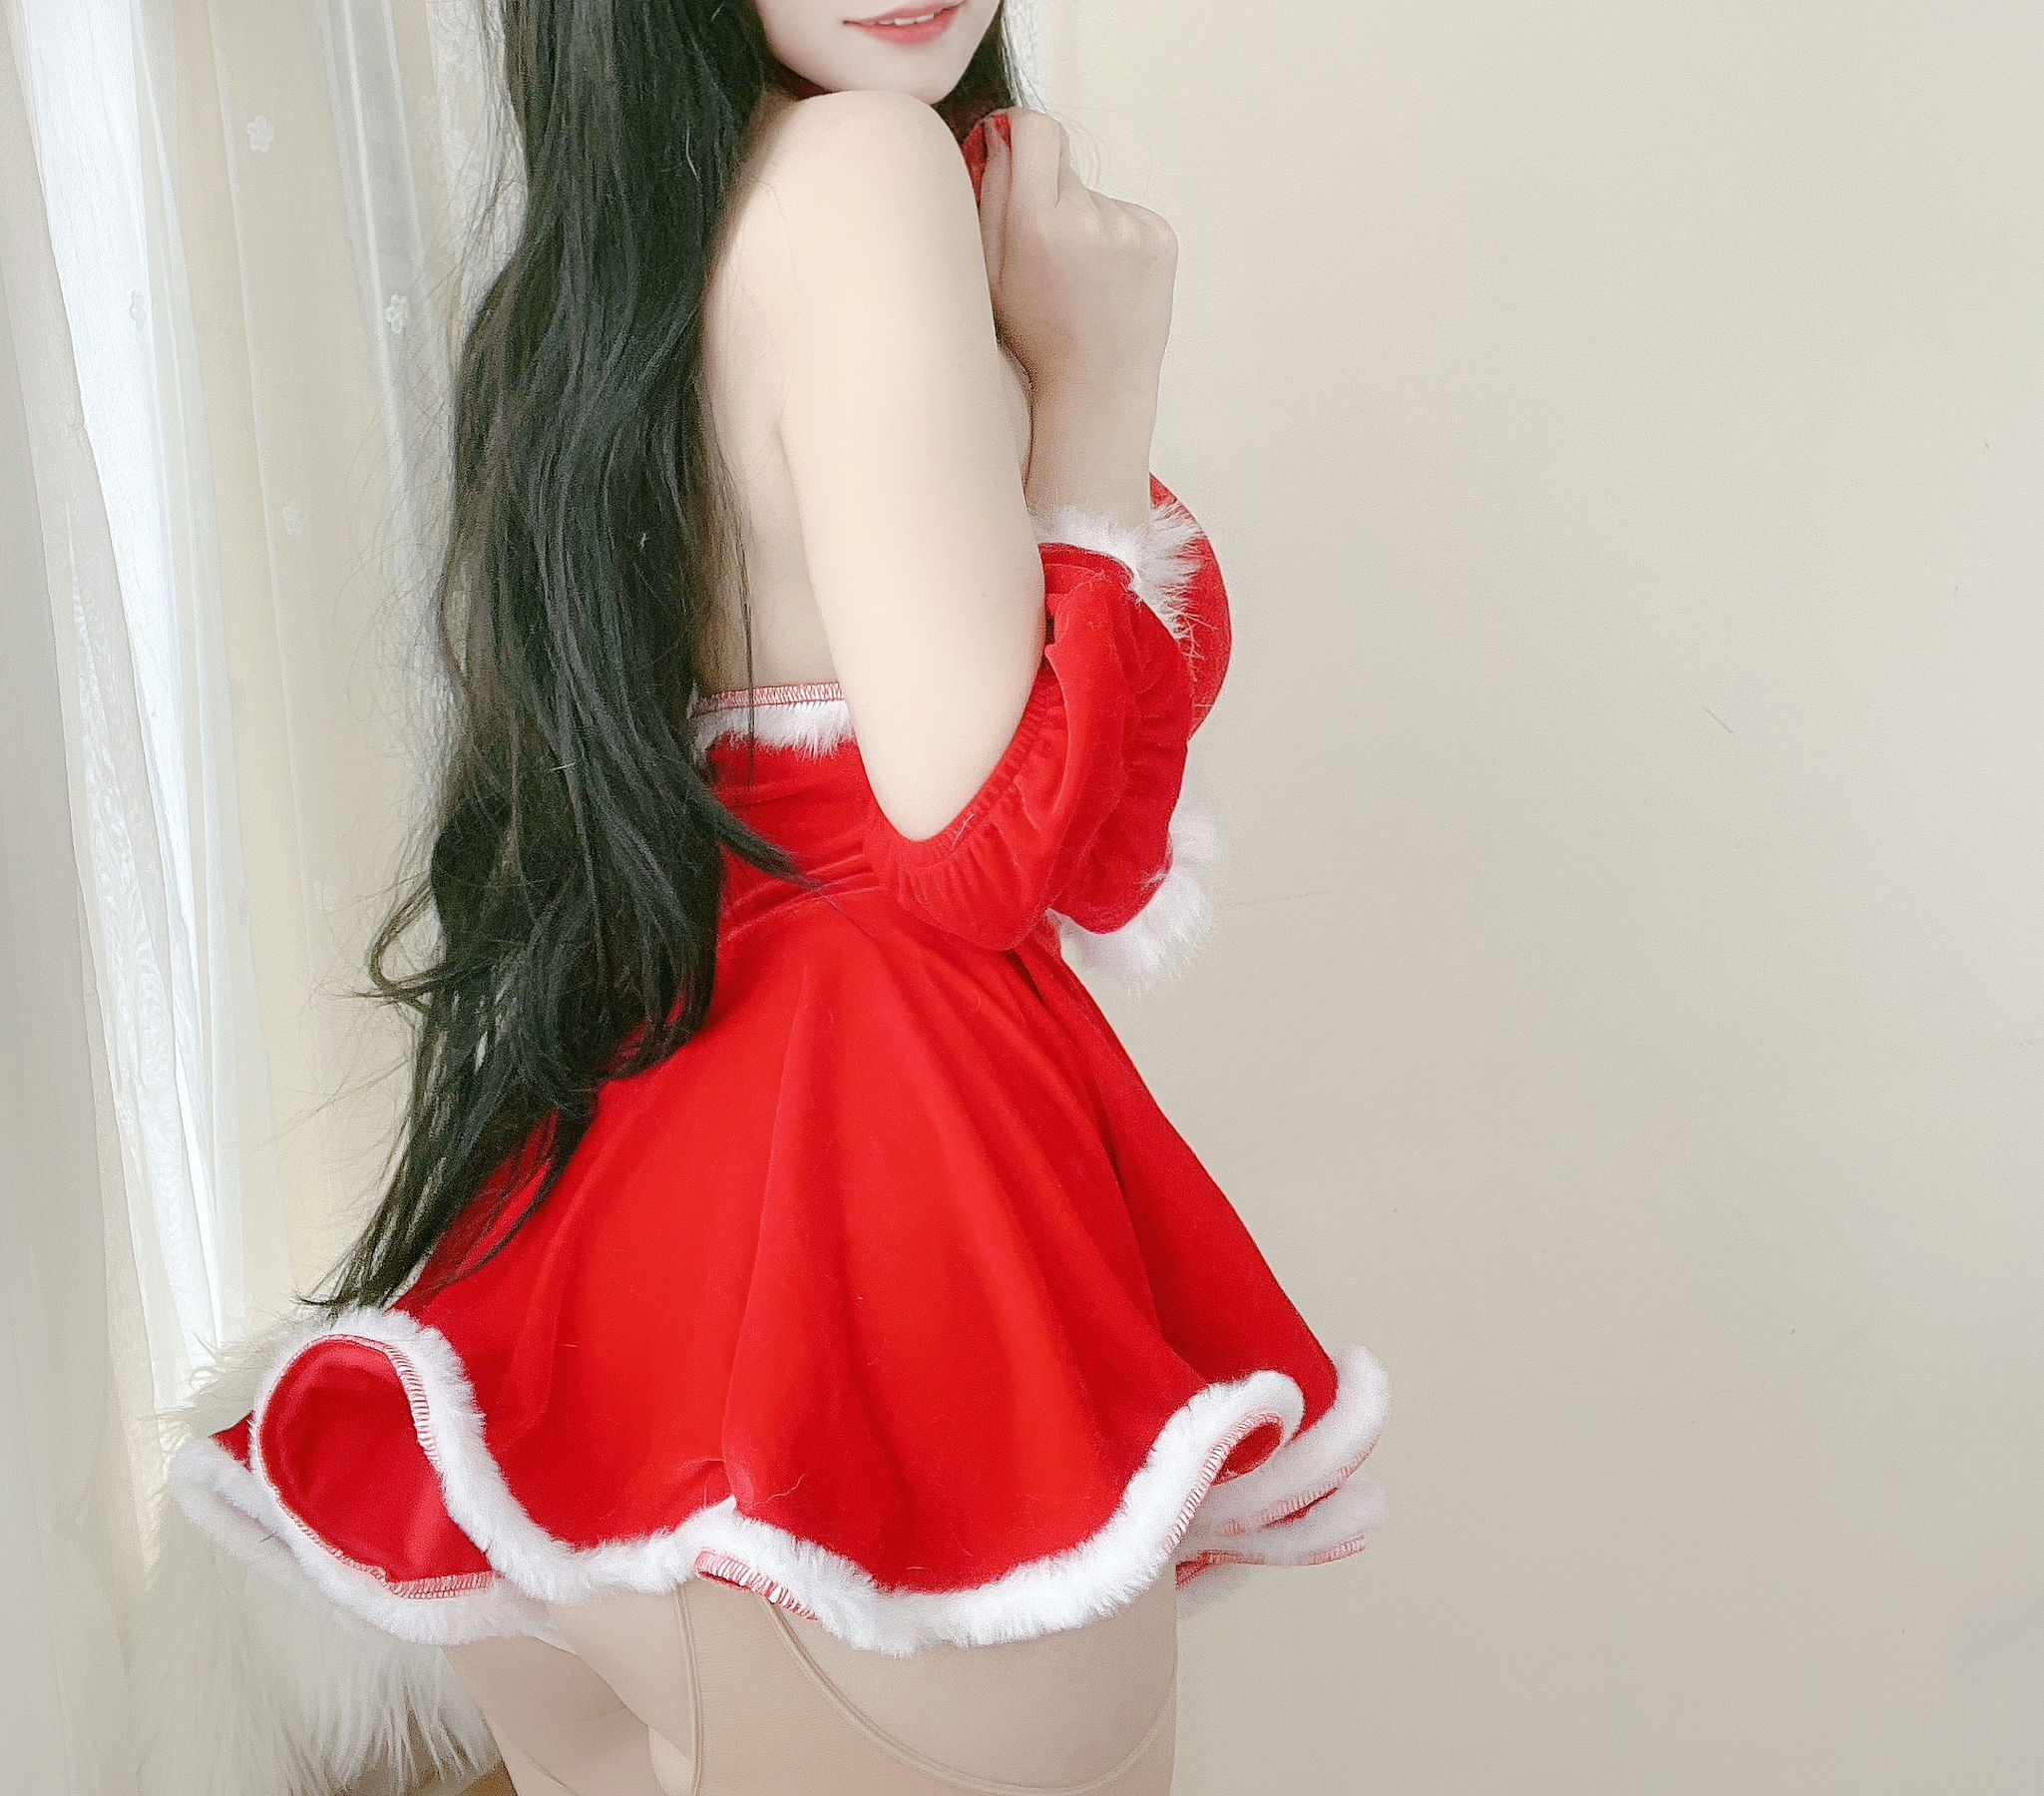 [网红COSER写真] 动漫博主小仓千代w - 红色圣诞礼物裙  第21张